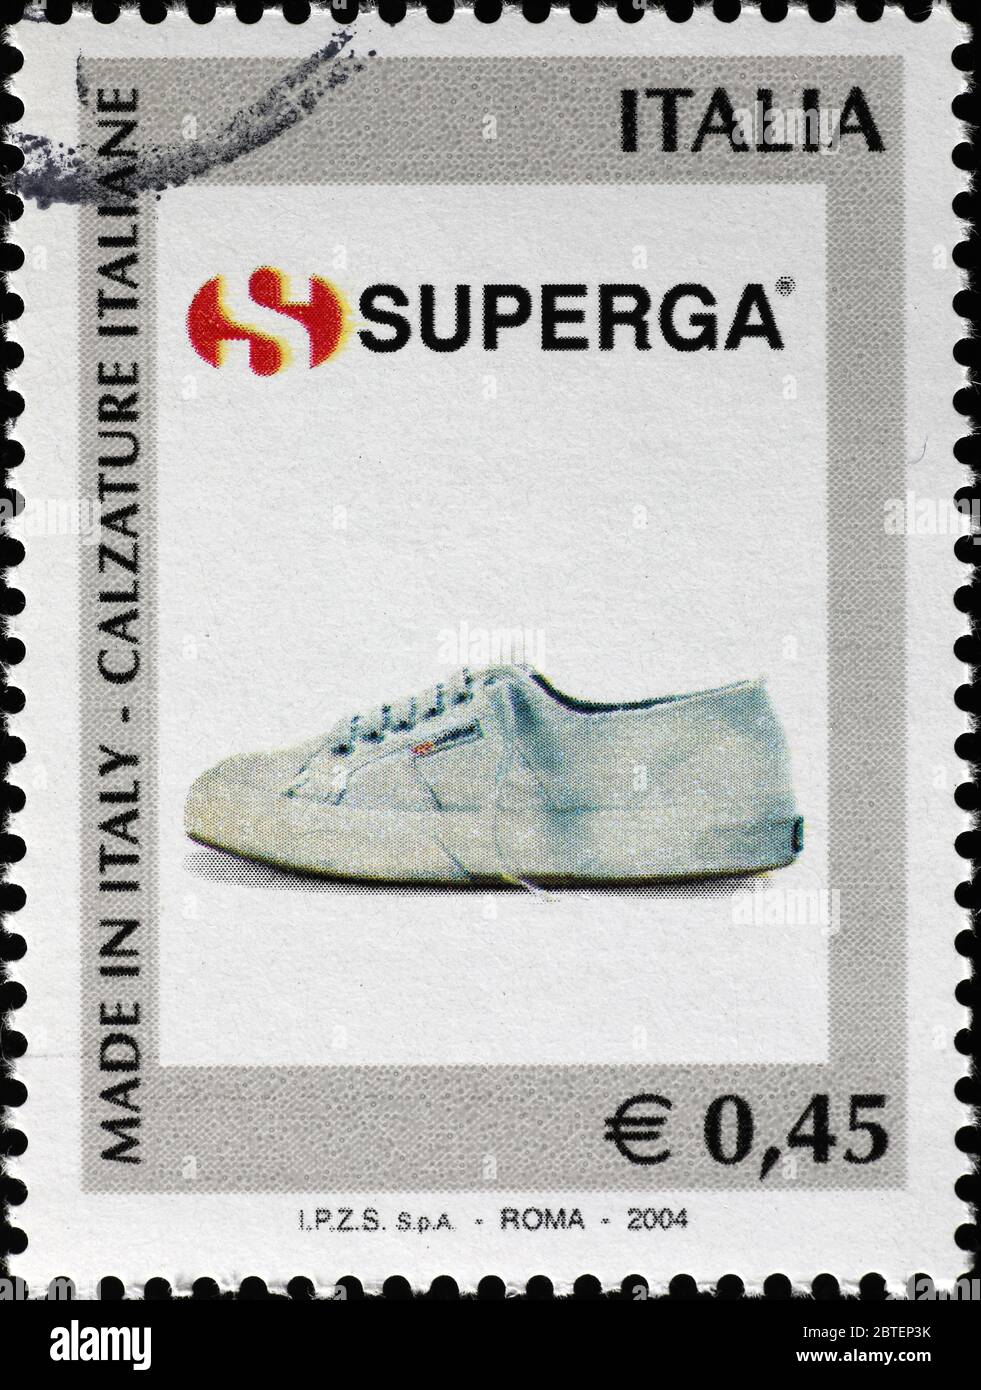 Marca italiana di scarpe Superga su francobollo Foto stock - Alamy